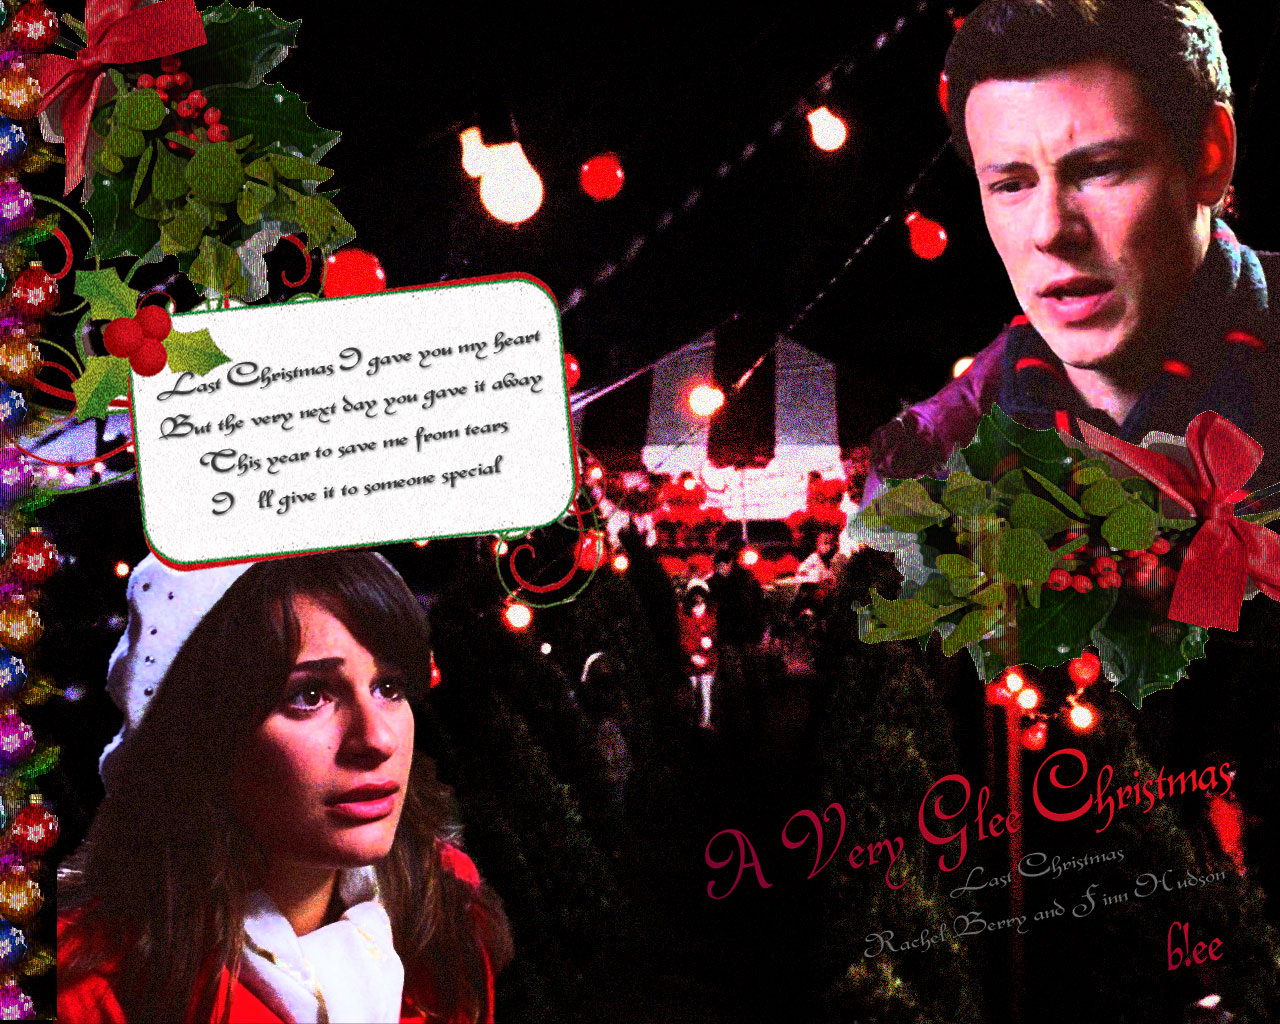 Glee A Very Christmas